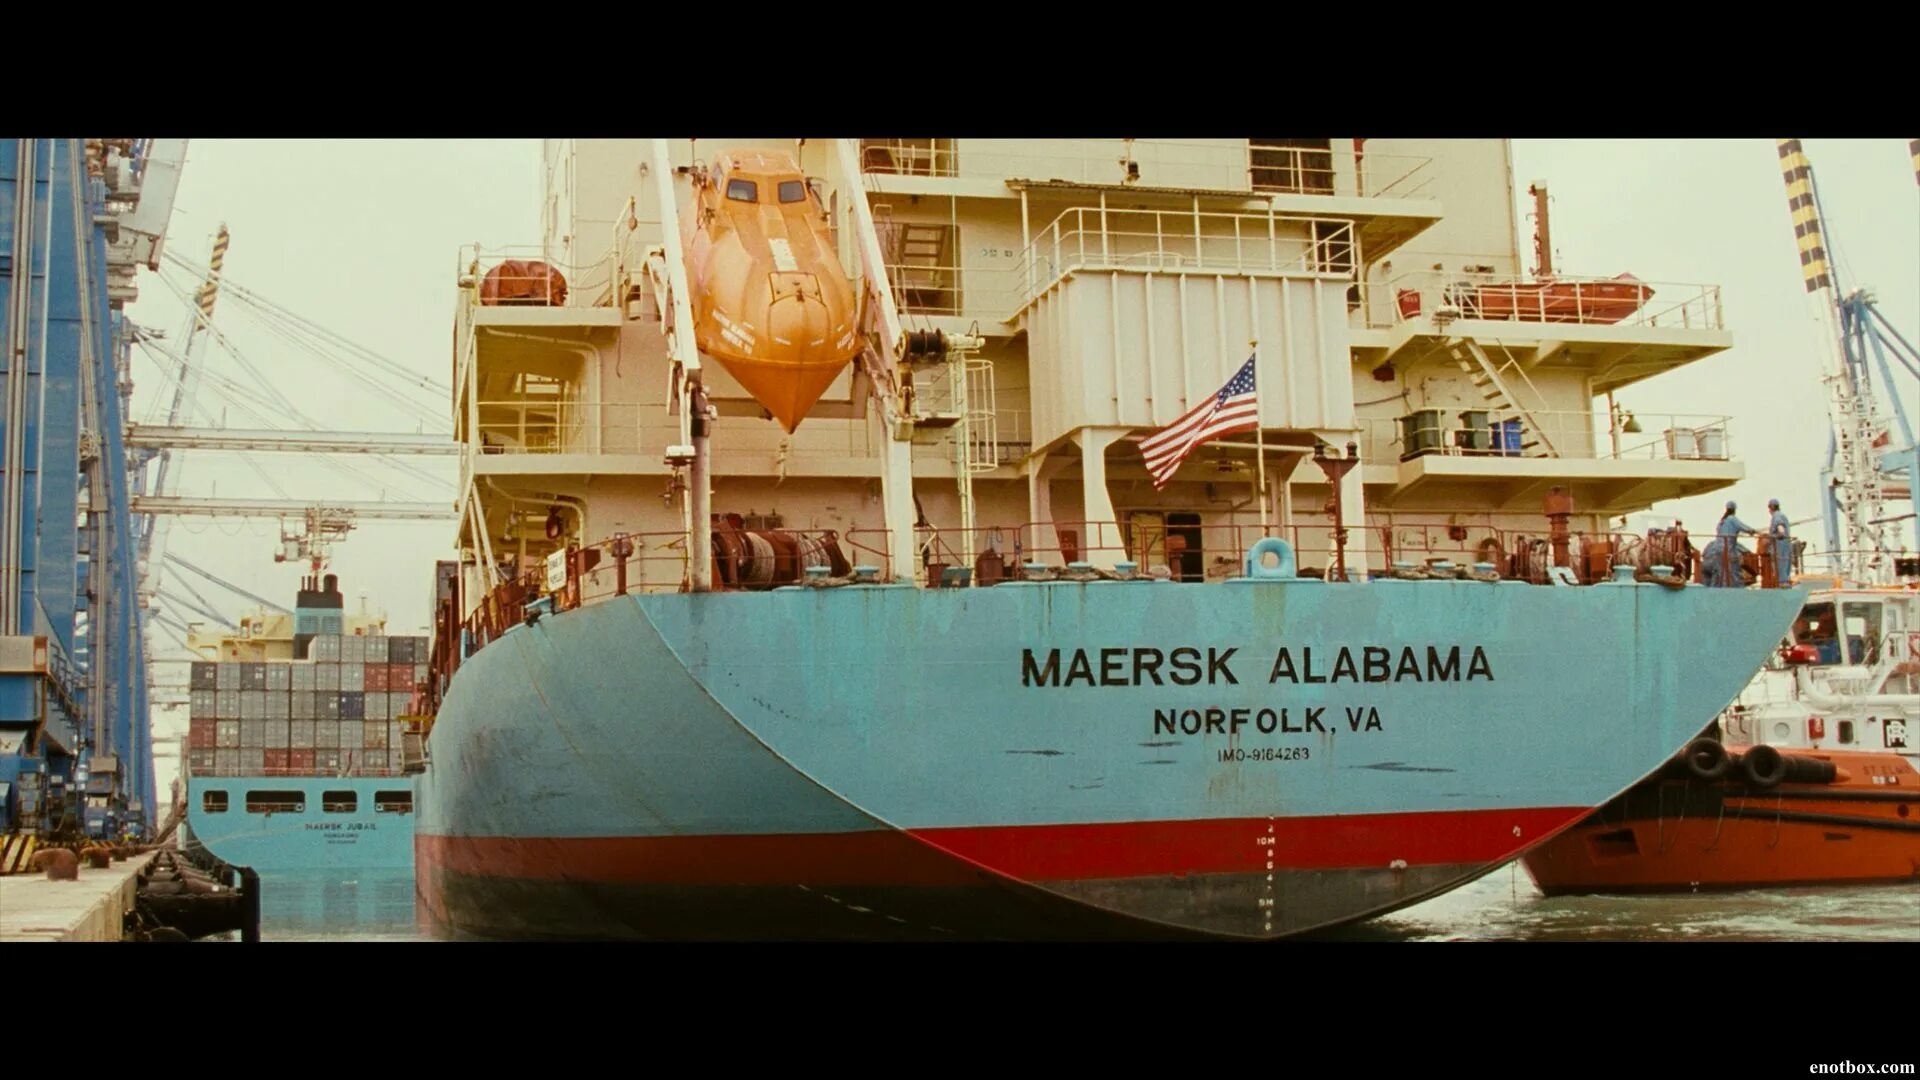 Режиссер судов. Капитан Филлипс Маерск. Судна MV Maersk Alabama. Капитан Филлипс Маерск Алабама. Маерск Алабама судно.